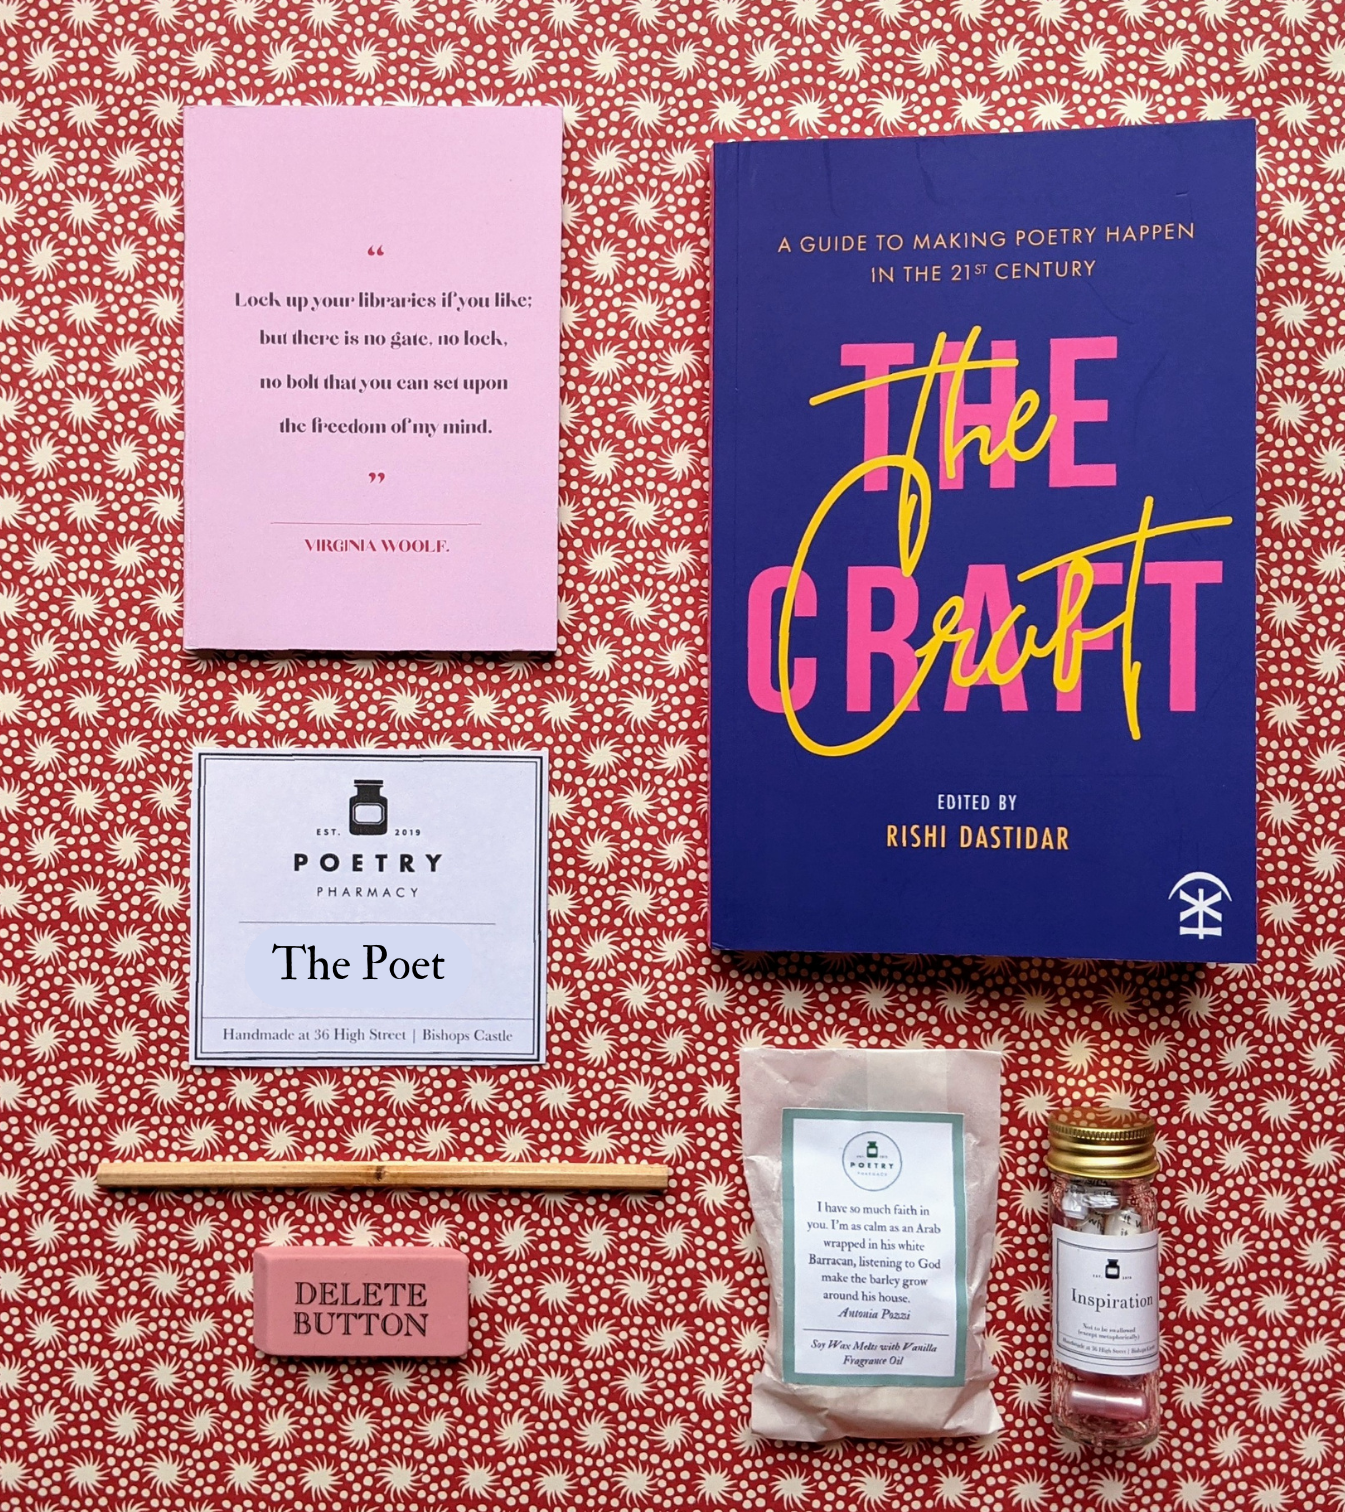 The Poet Gift Box